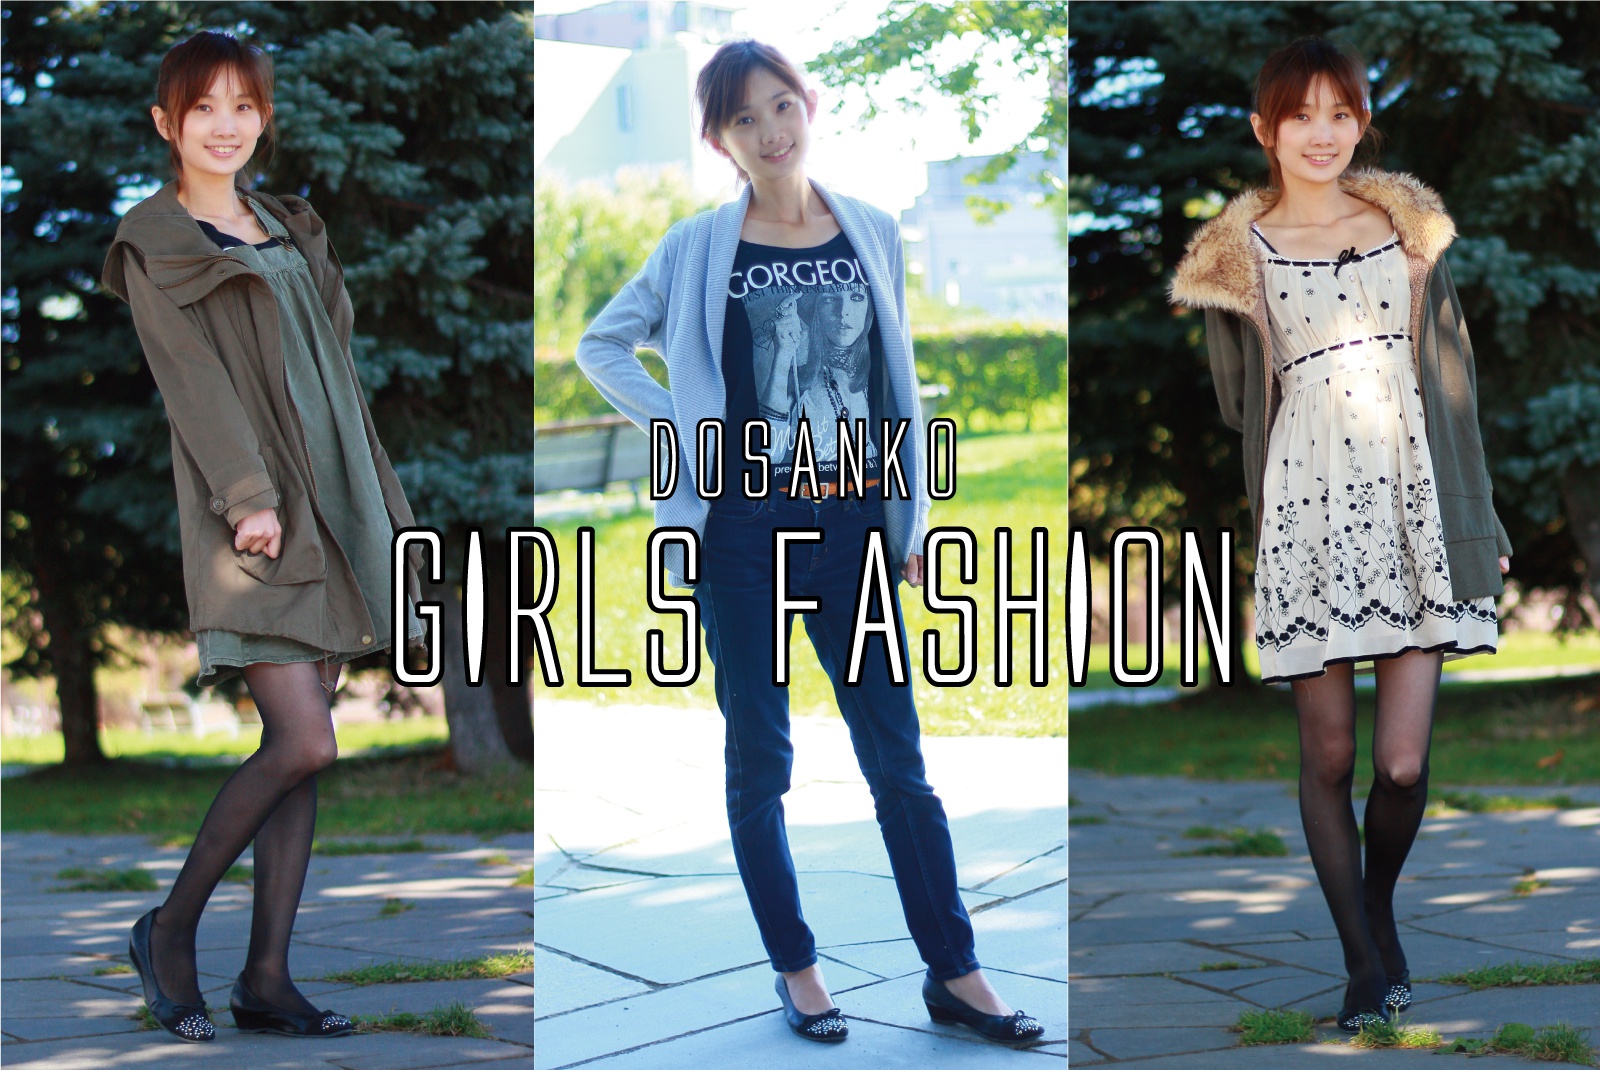 10月はどんな服装がいい 道産子ガールズファッション 北海道ファンマガジン